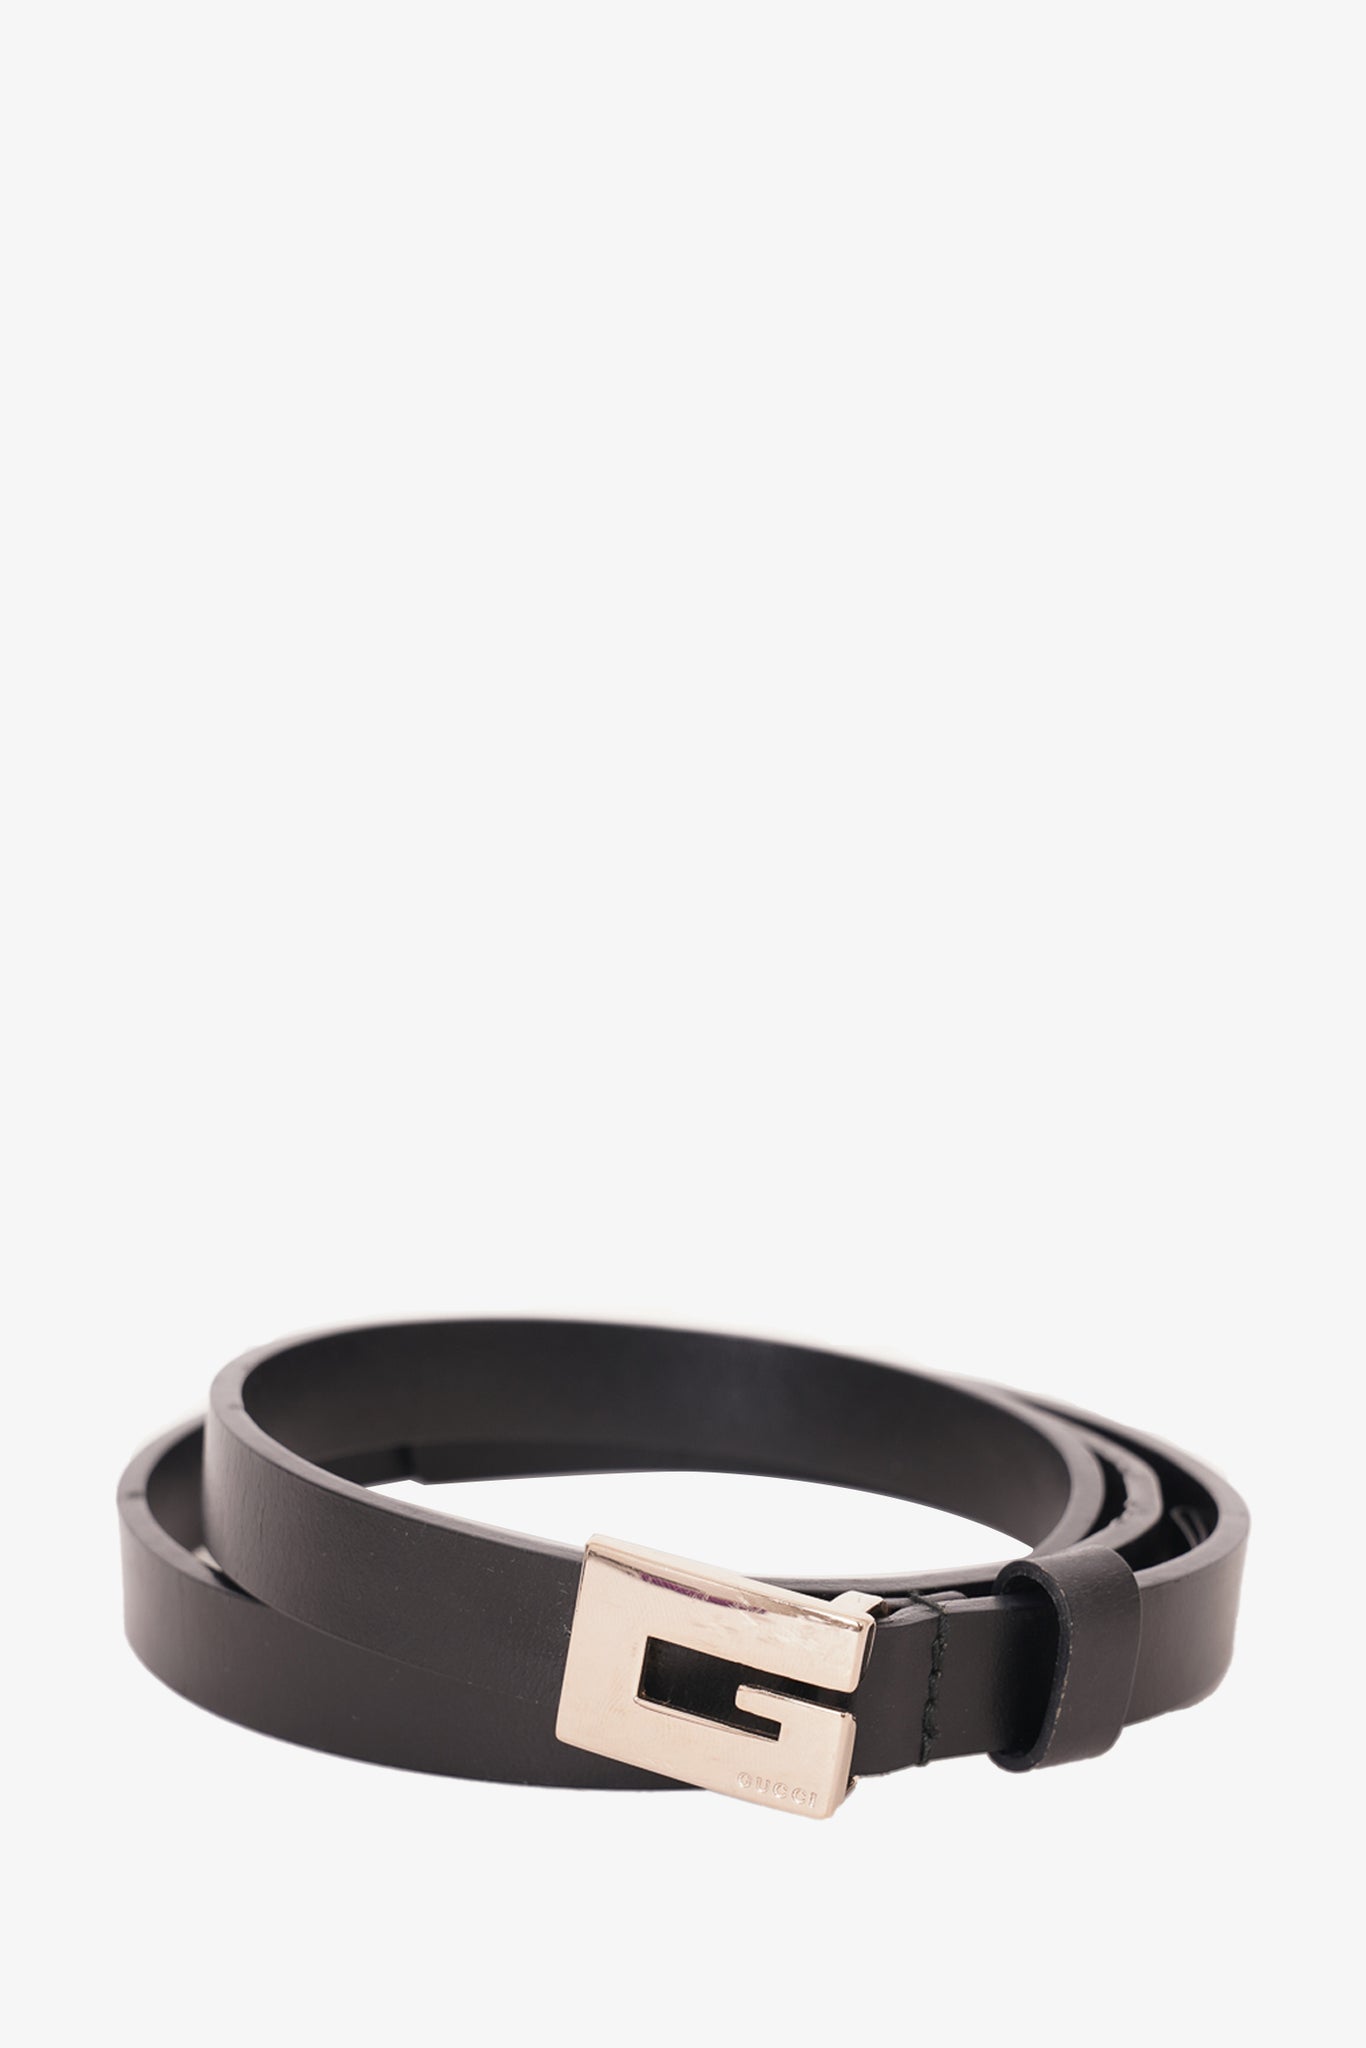 Louis Vuitton Damier Graphite Belt w/ Silver Buckle sz 100/40 – Mine & Yours